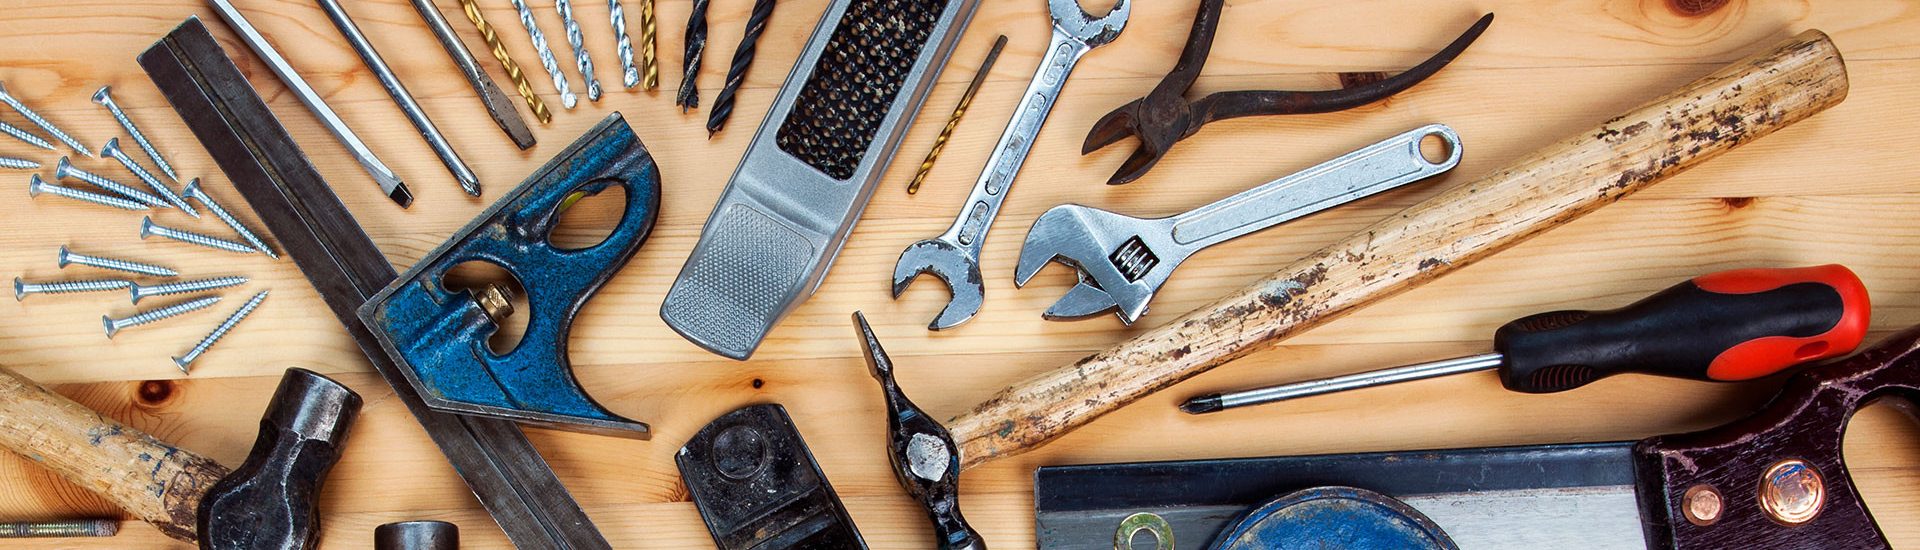 7 productos para tener tus herramientas de bricolaje en orden